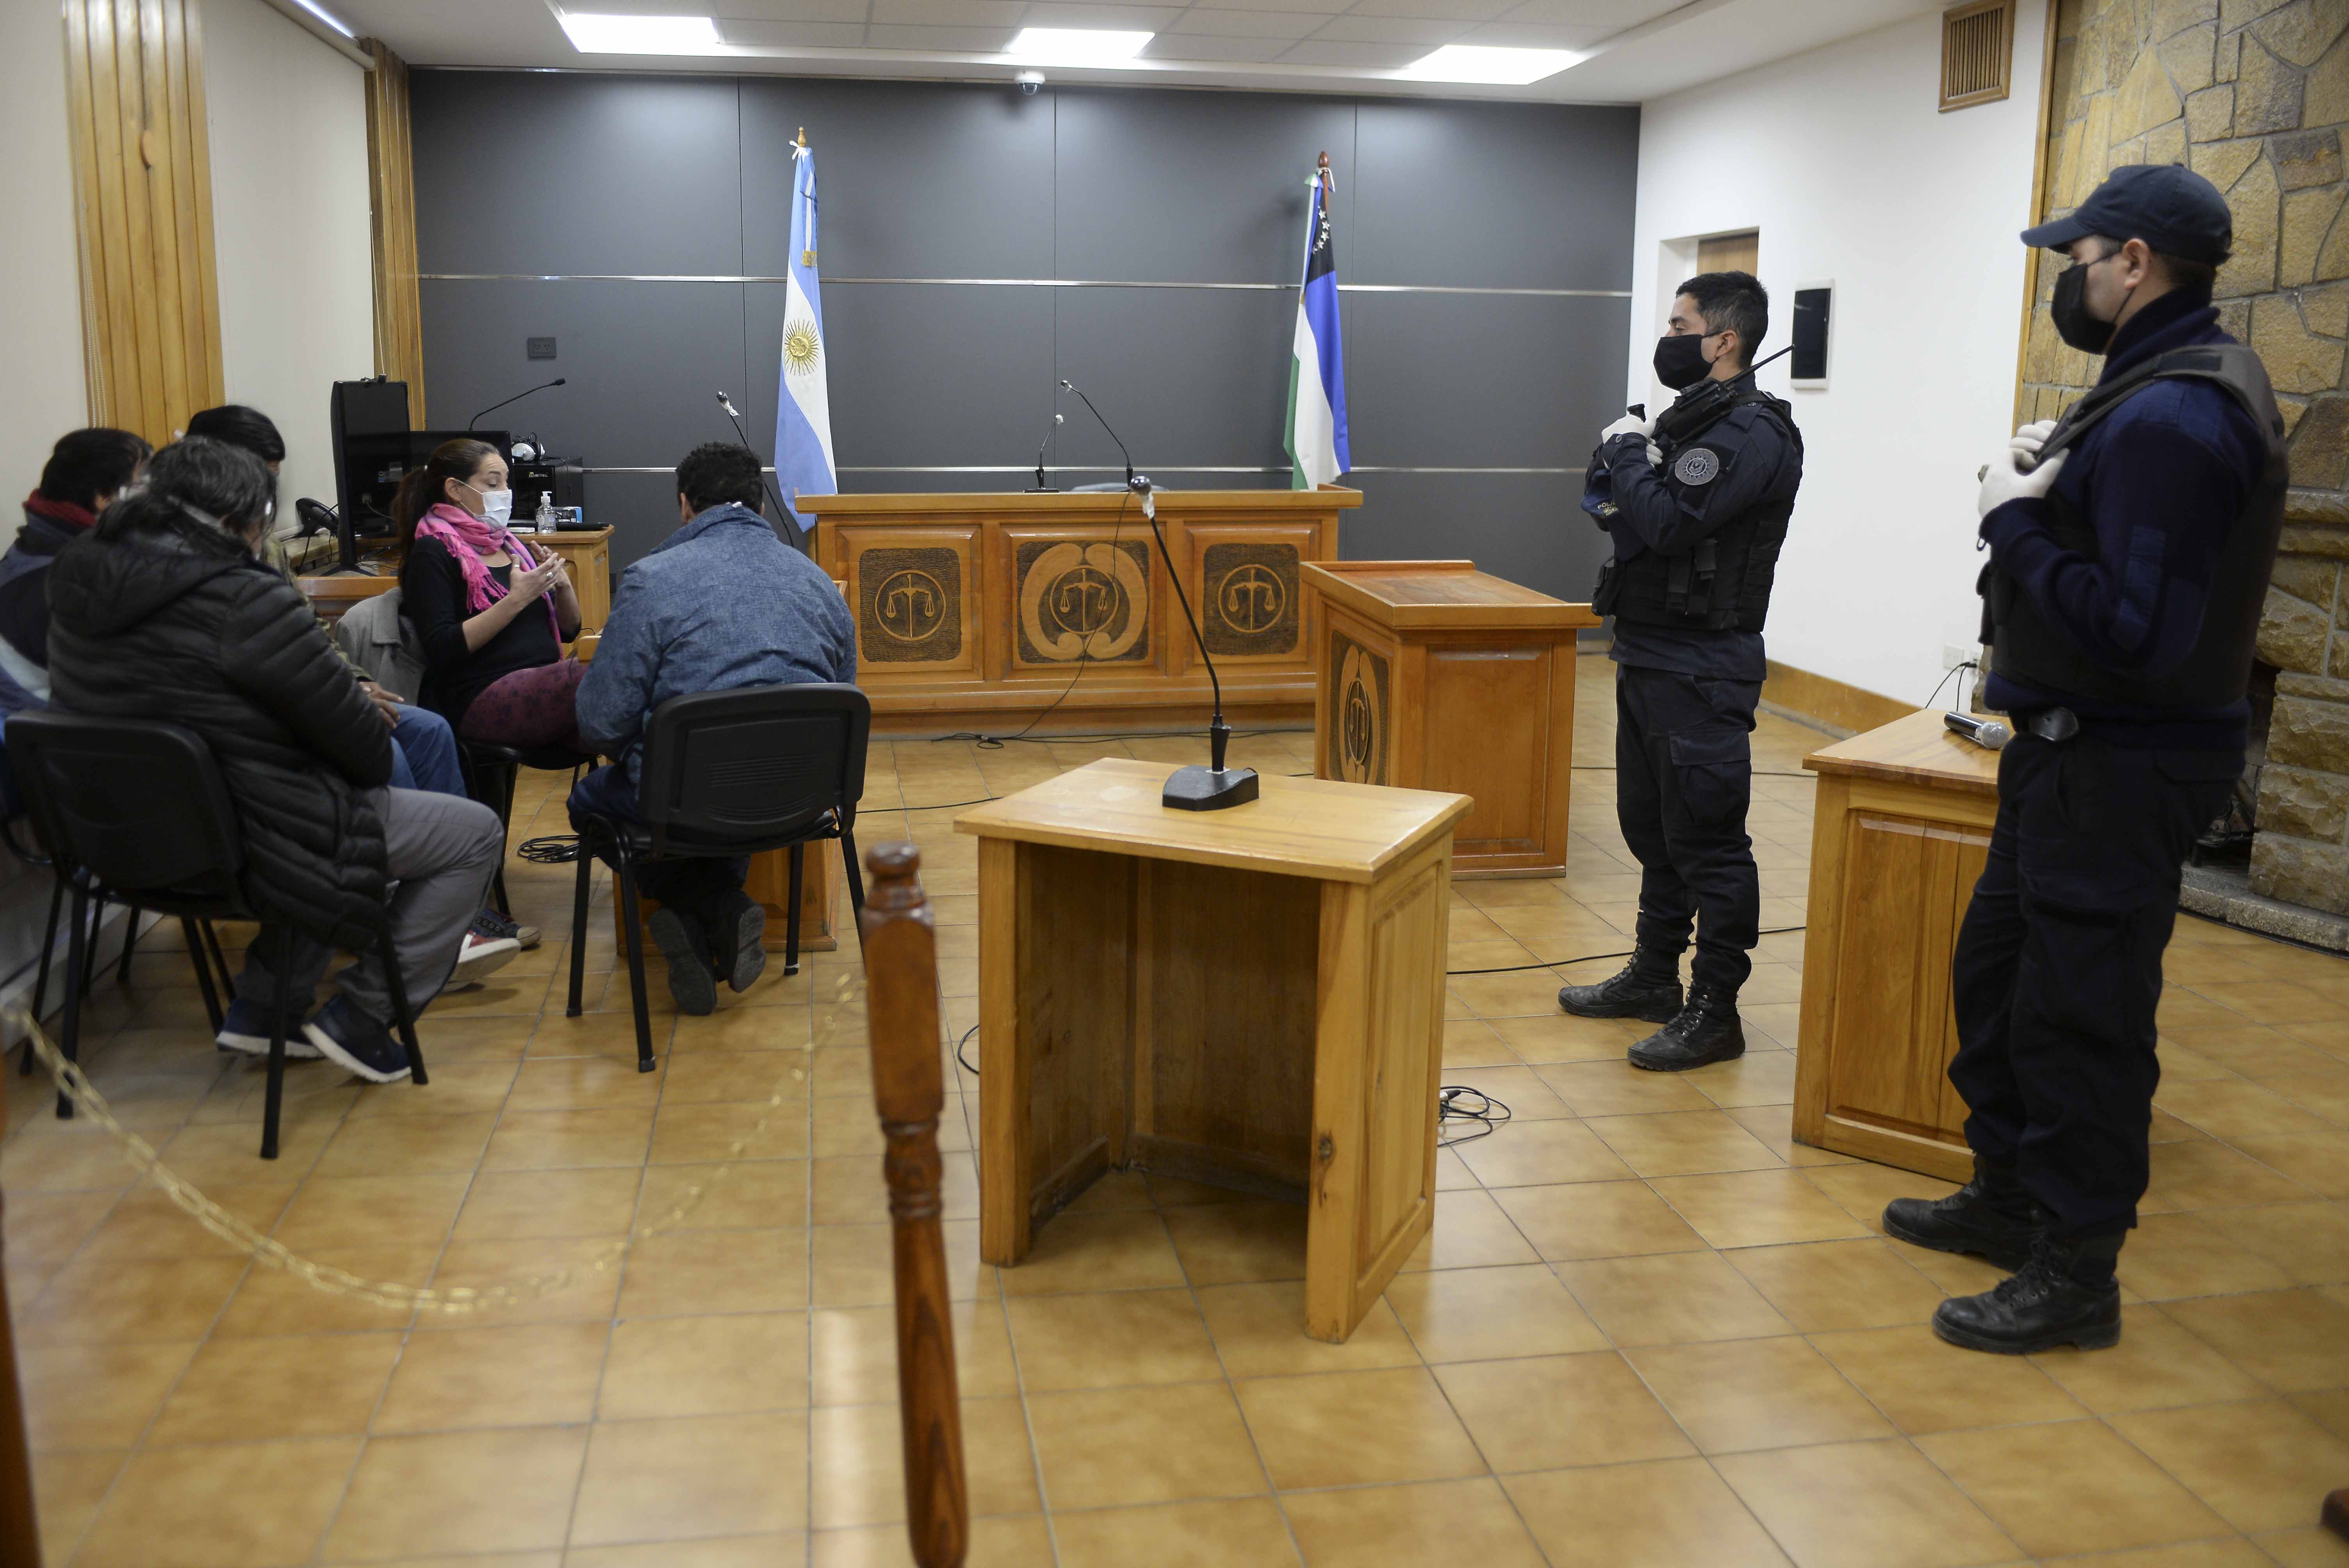 Los cuatro imputados comparecieron junto a su defensora particular a la audiencia de formulación de cargos. (Foto Alfredo Leiva)